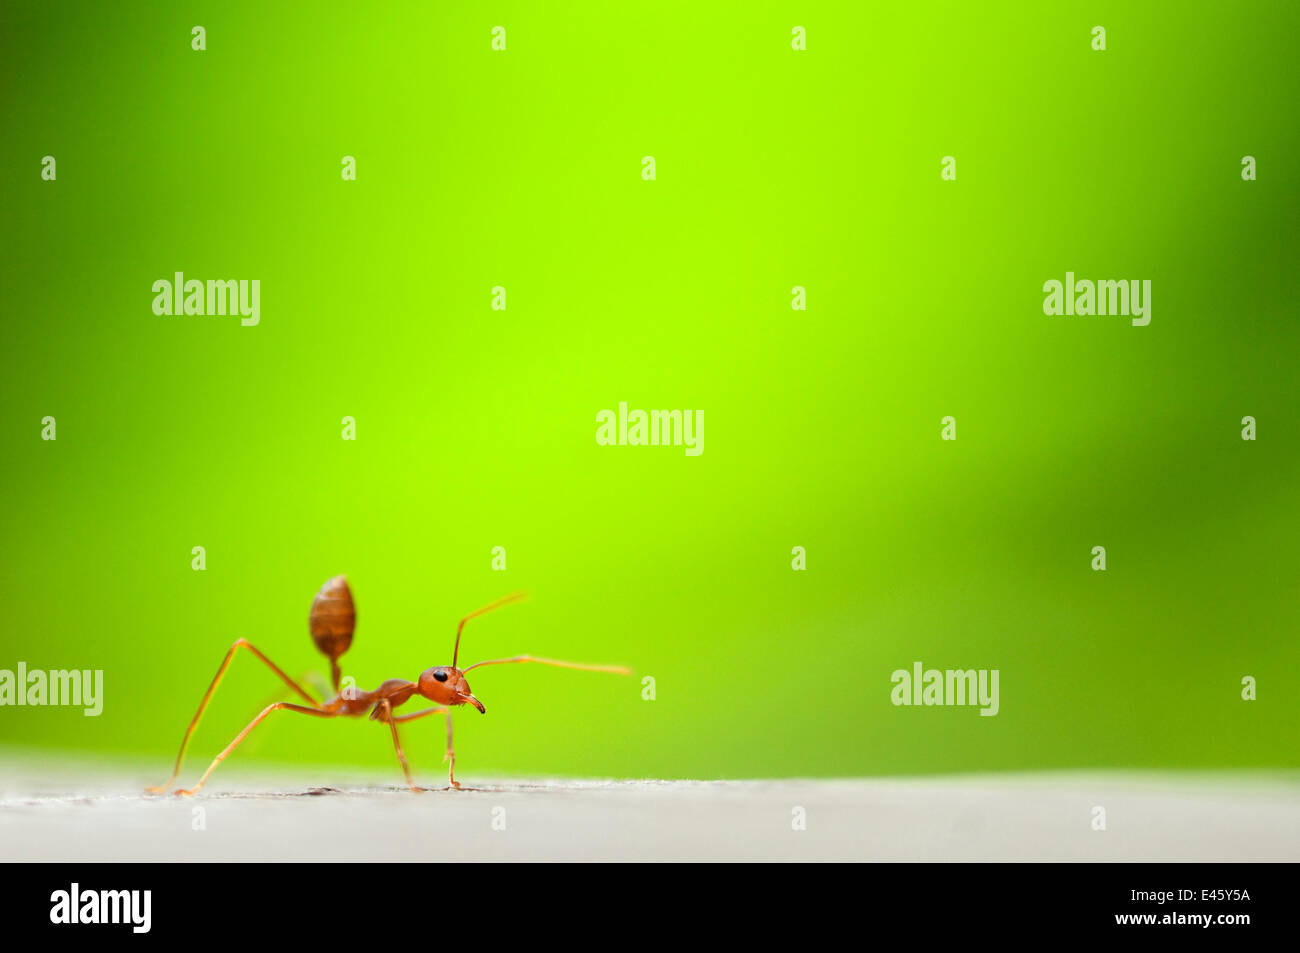 La hormiga roja de fuego importada (Solenopsis sp) trabajador, con material vegetal verde detrás Foto de stock